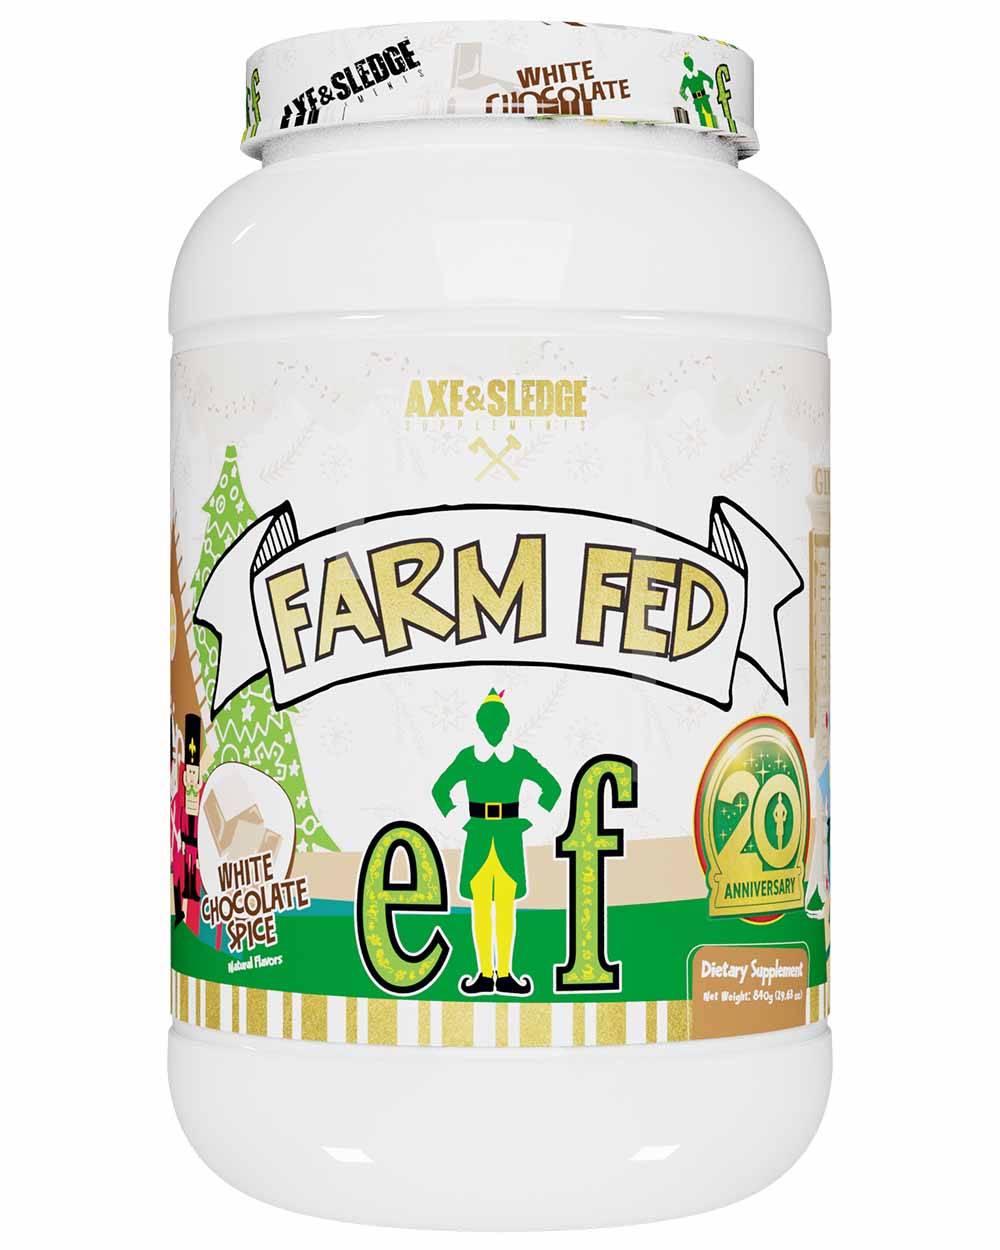 Axe N Sledge Farm Fed (Grass Fed Whey Protein Isolate)